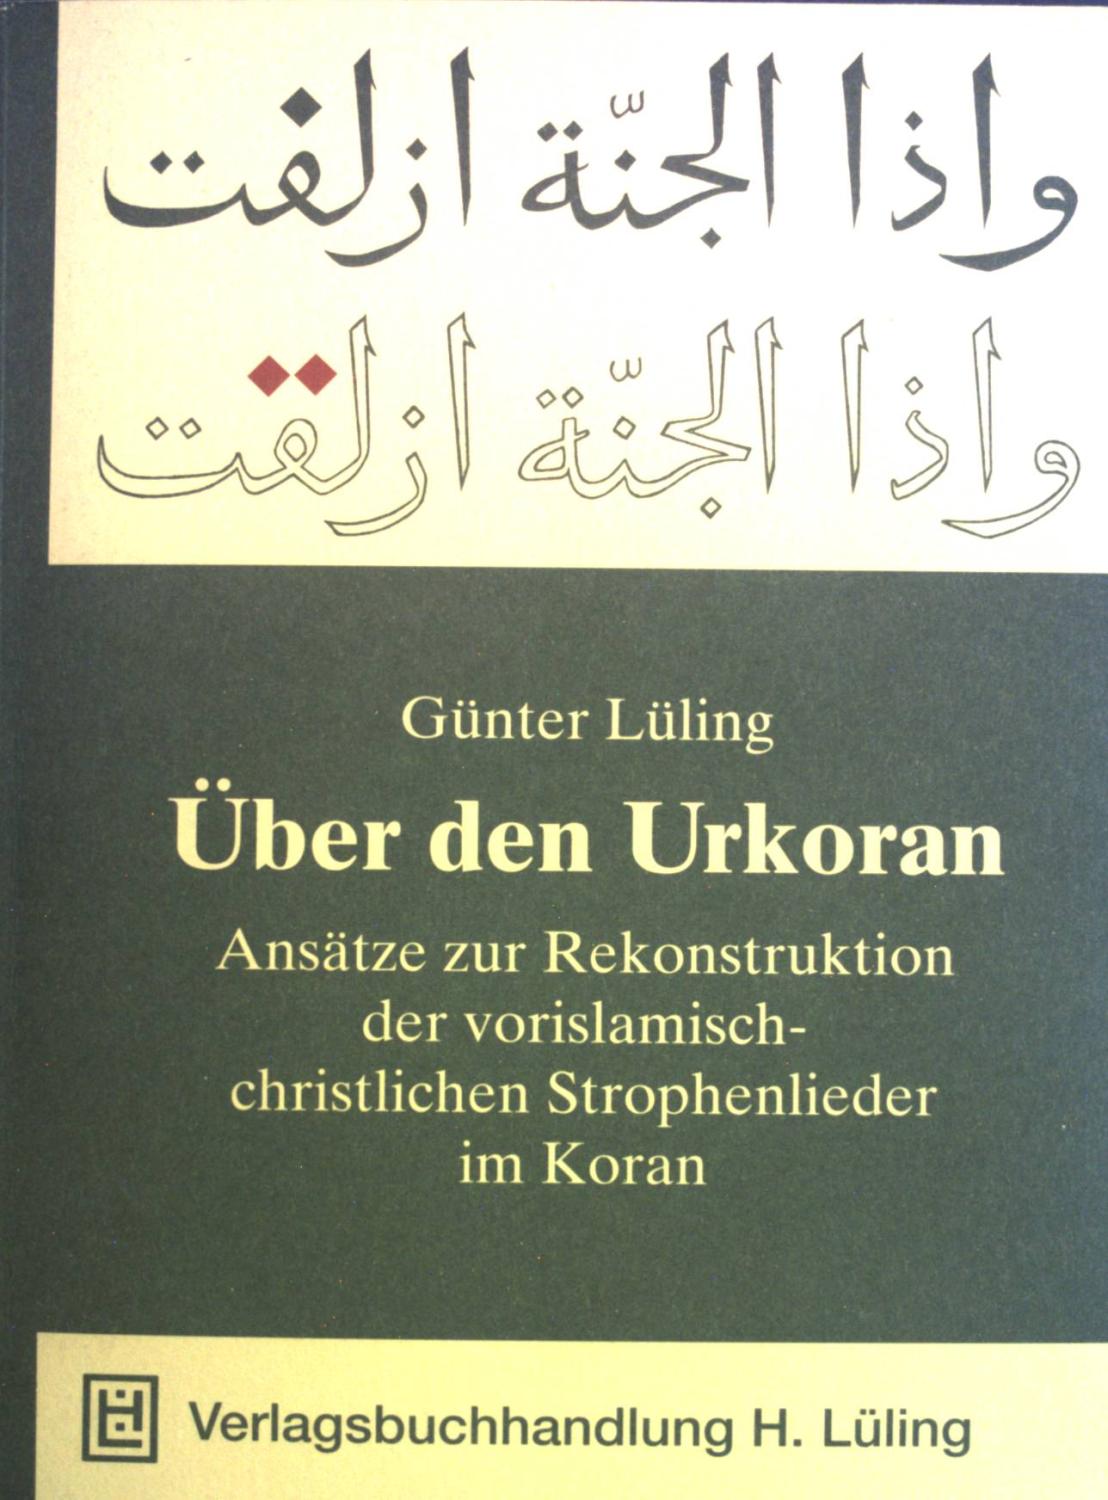 Über den Urkoran. Ansätze zur Rekonstruktion der vorislamisch-christlichen Strophenlieder im Koran